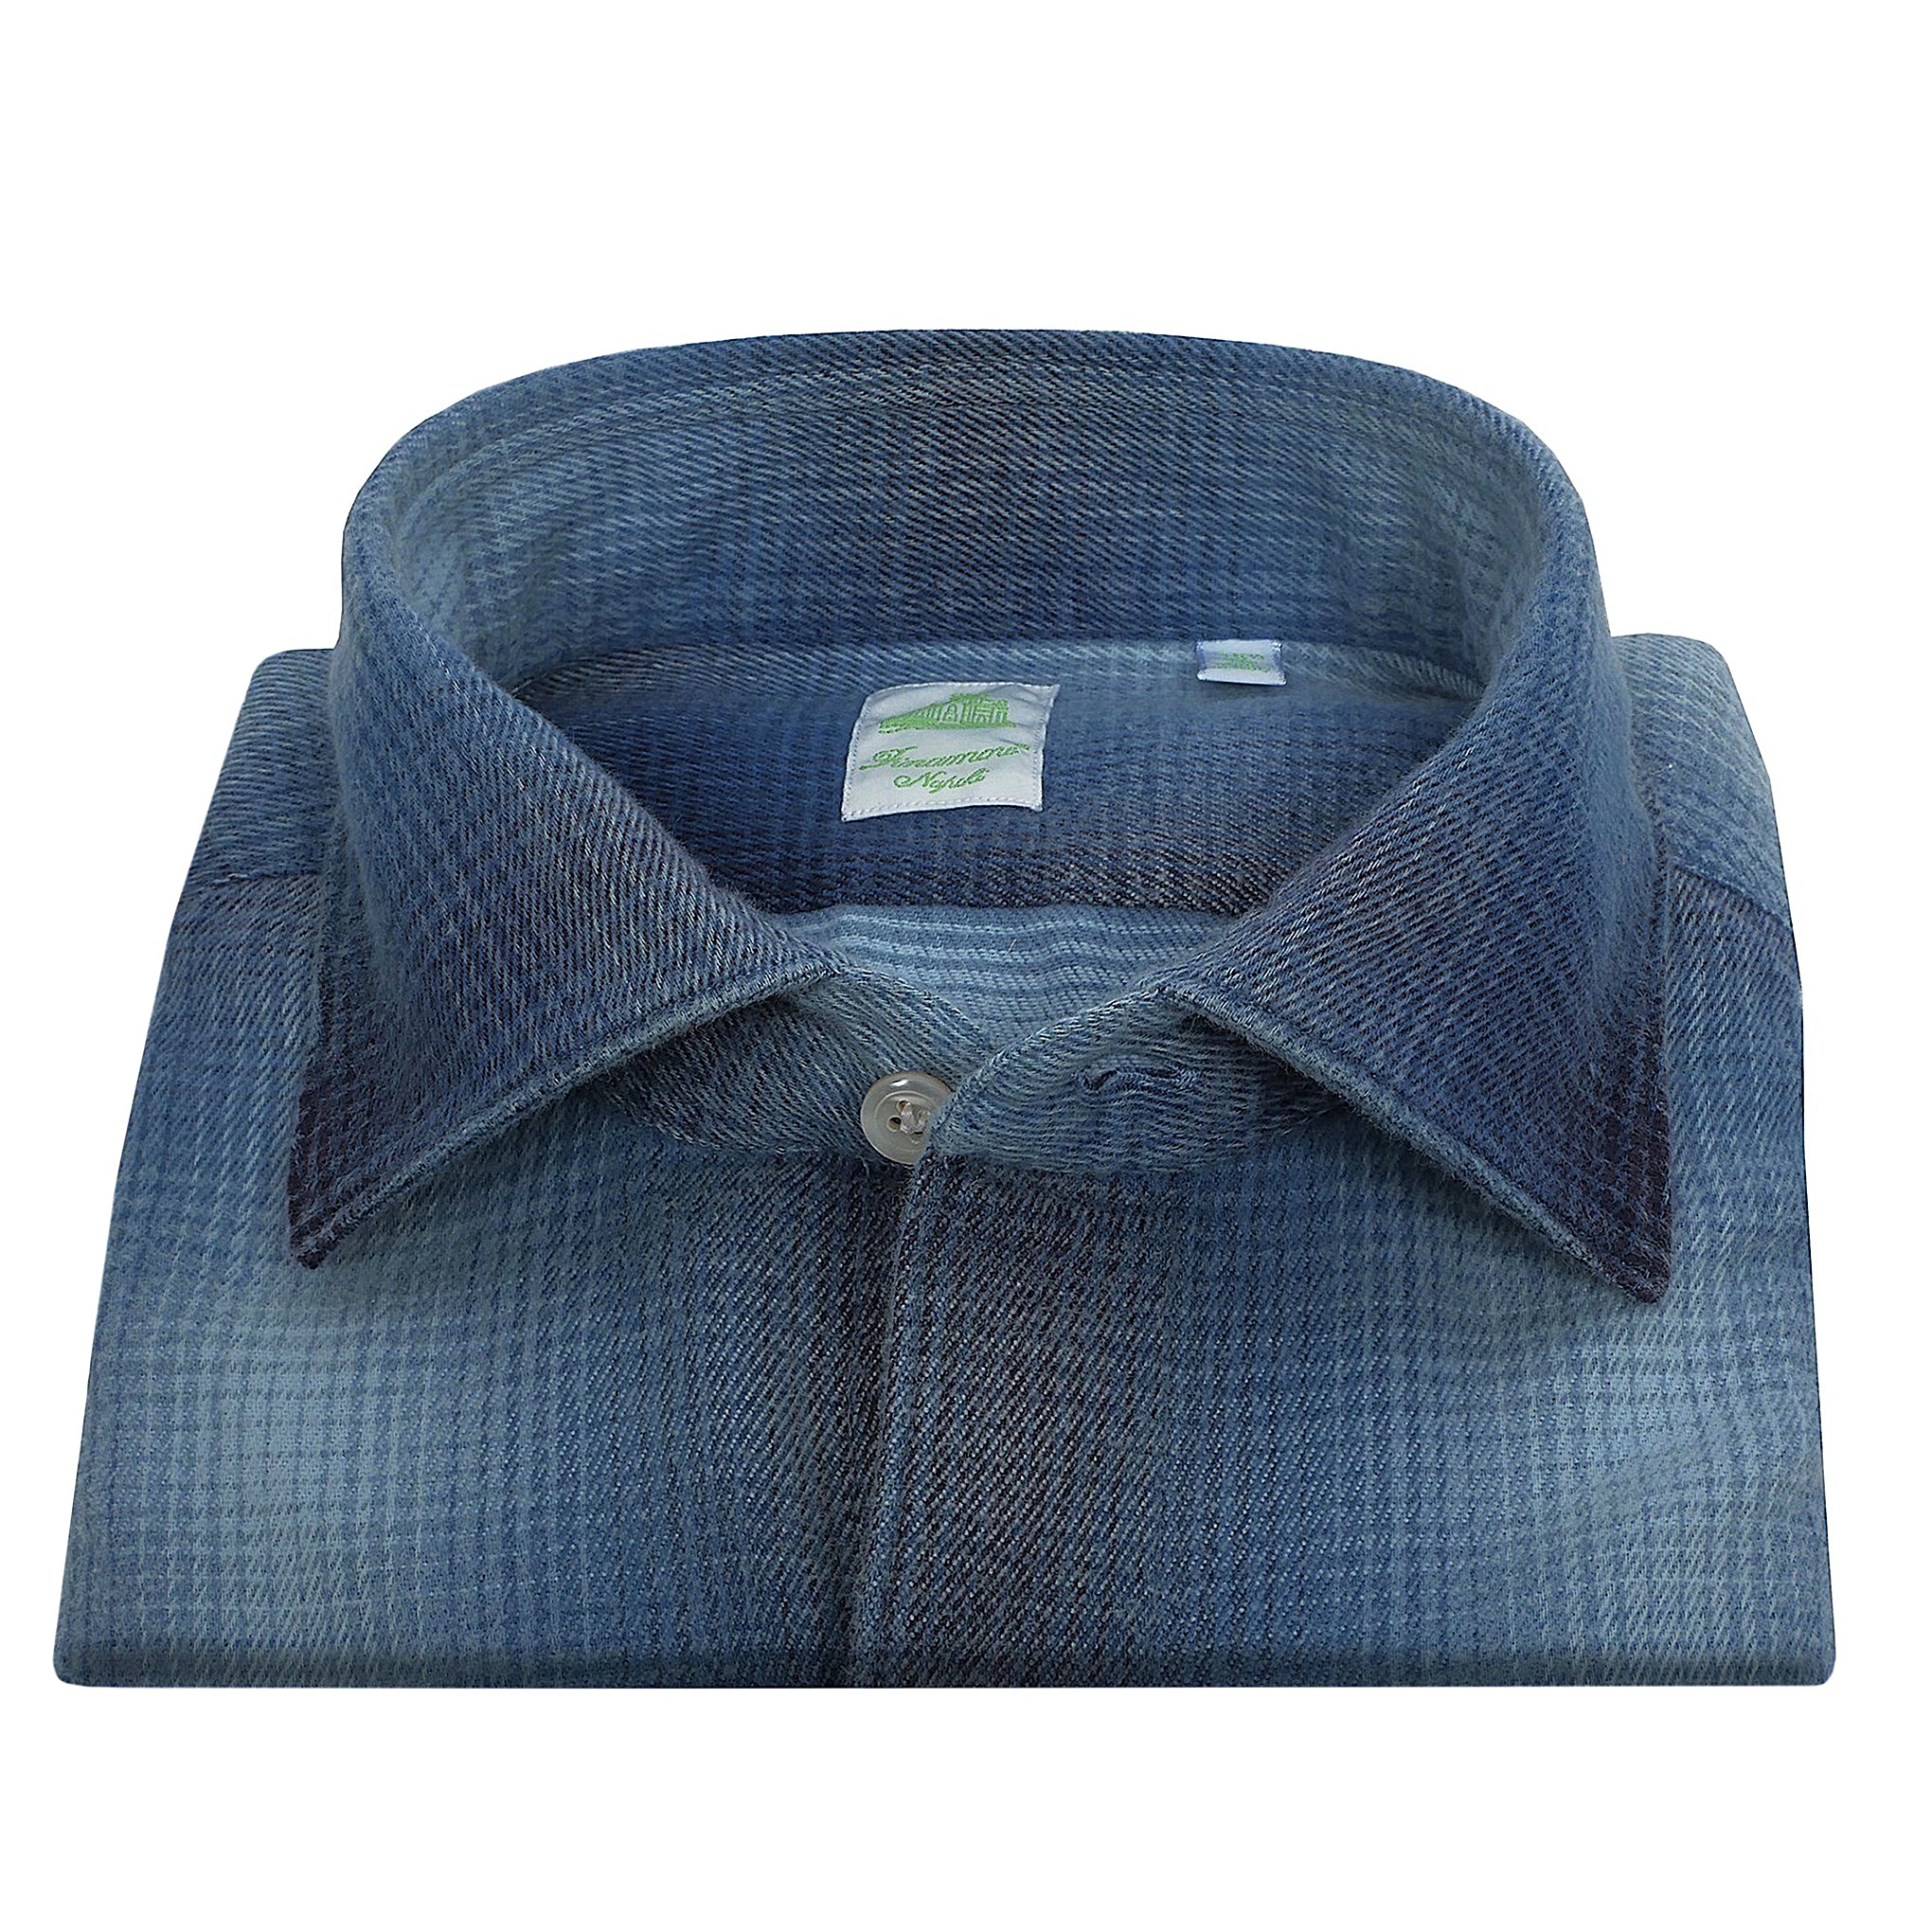 Tokyo slim fit shirt in fake indigo madras sport in cotton